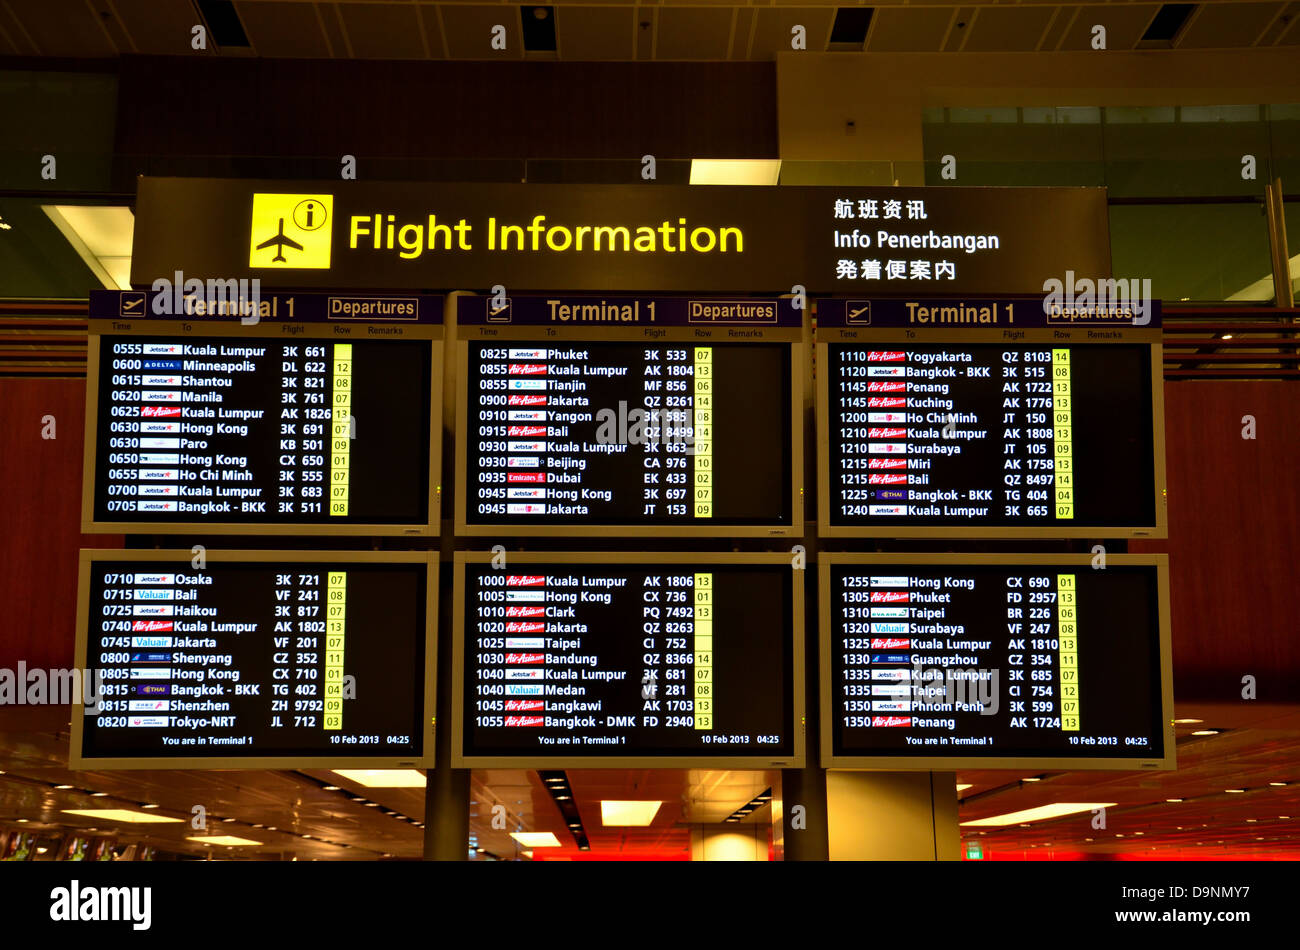 Flight information Region Jakarta. Аэропорт вены прилет